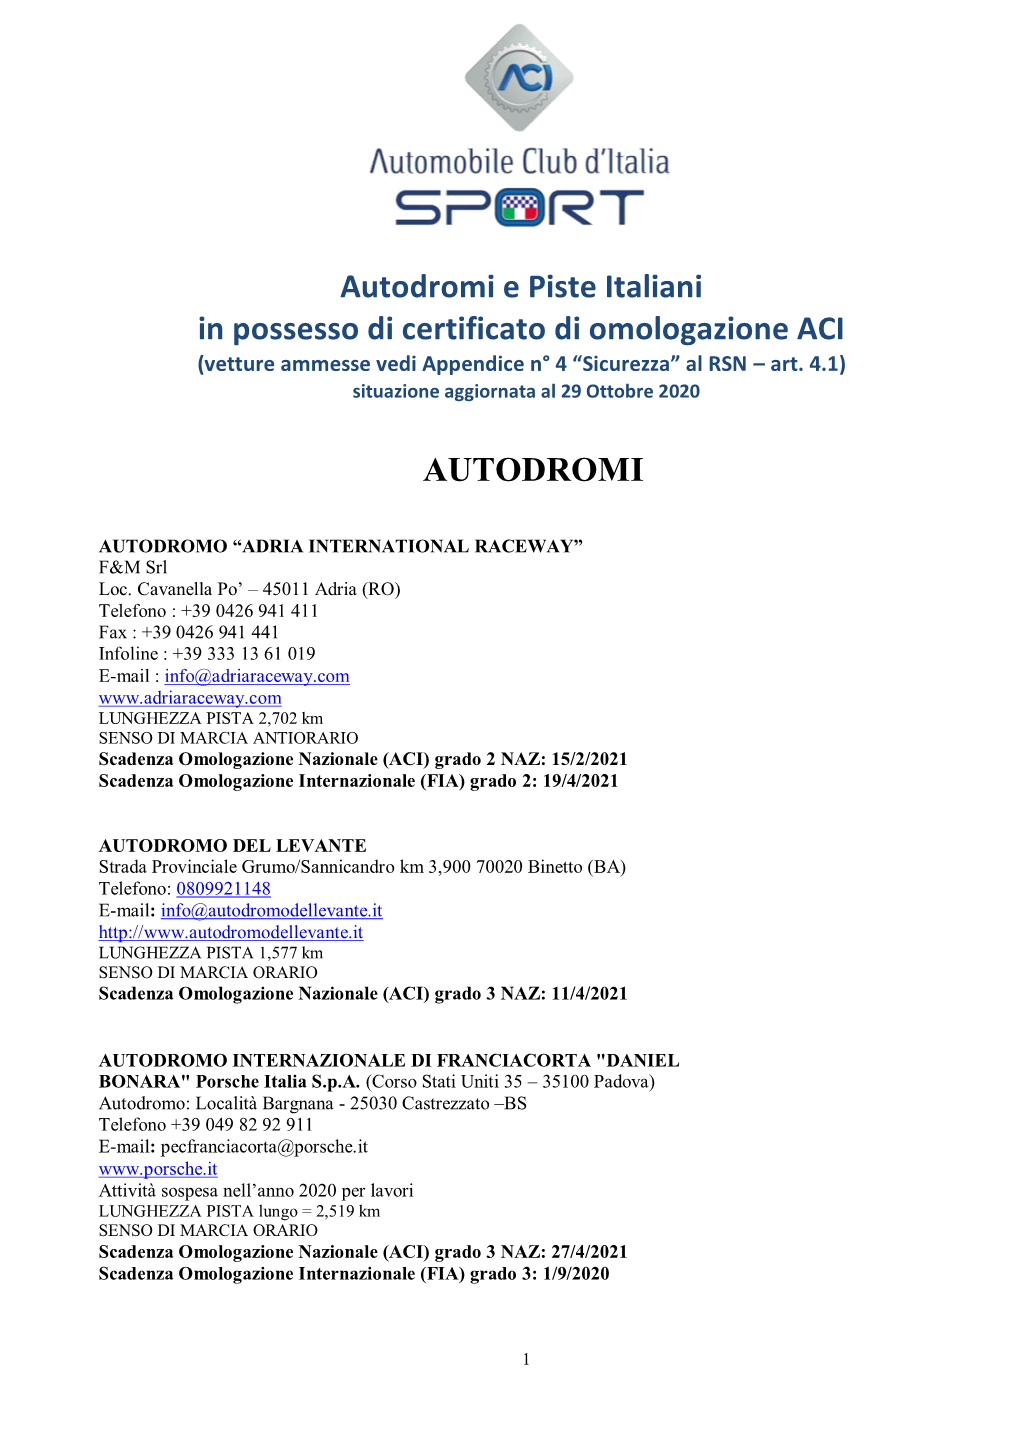 Autodromi E Piste Italiani in Possesso Di Certificato Di Omologazione ACI AUTODROMI